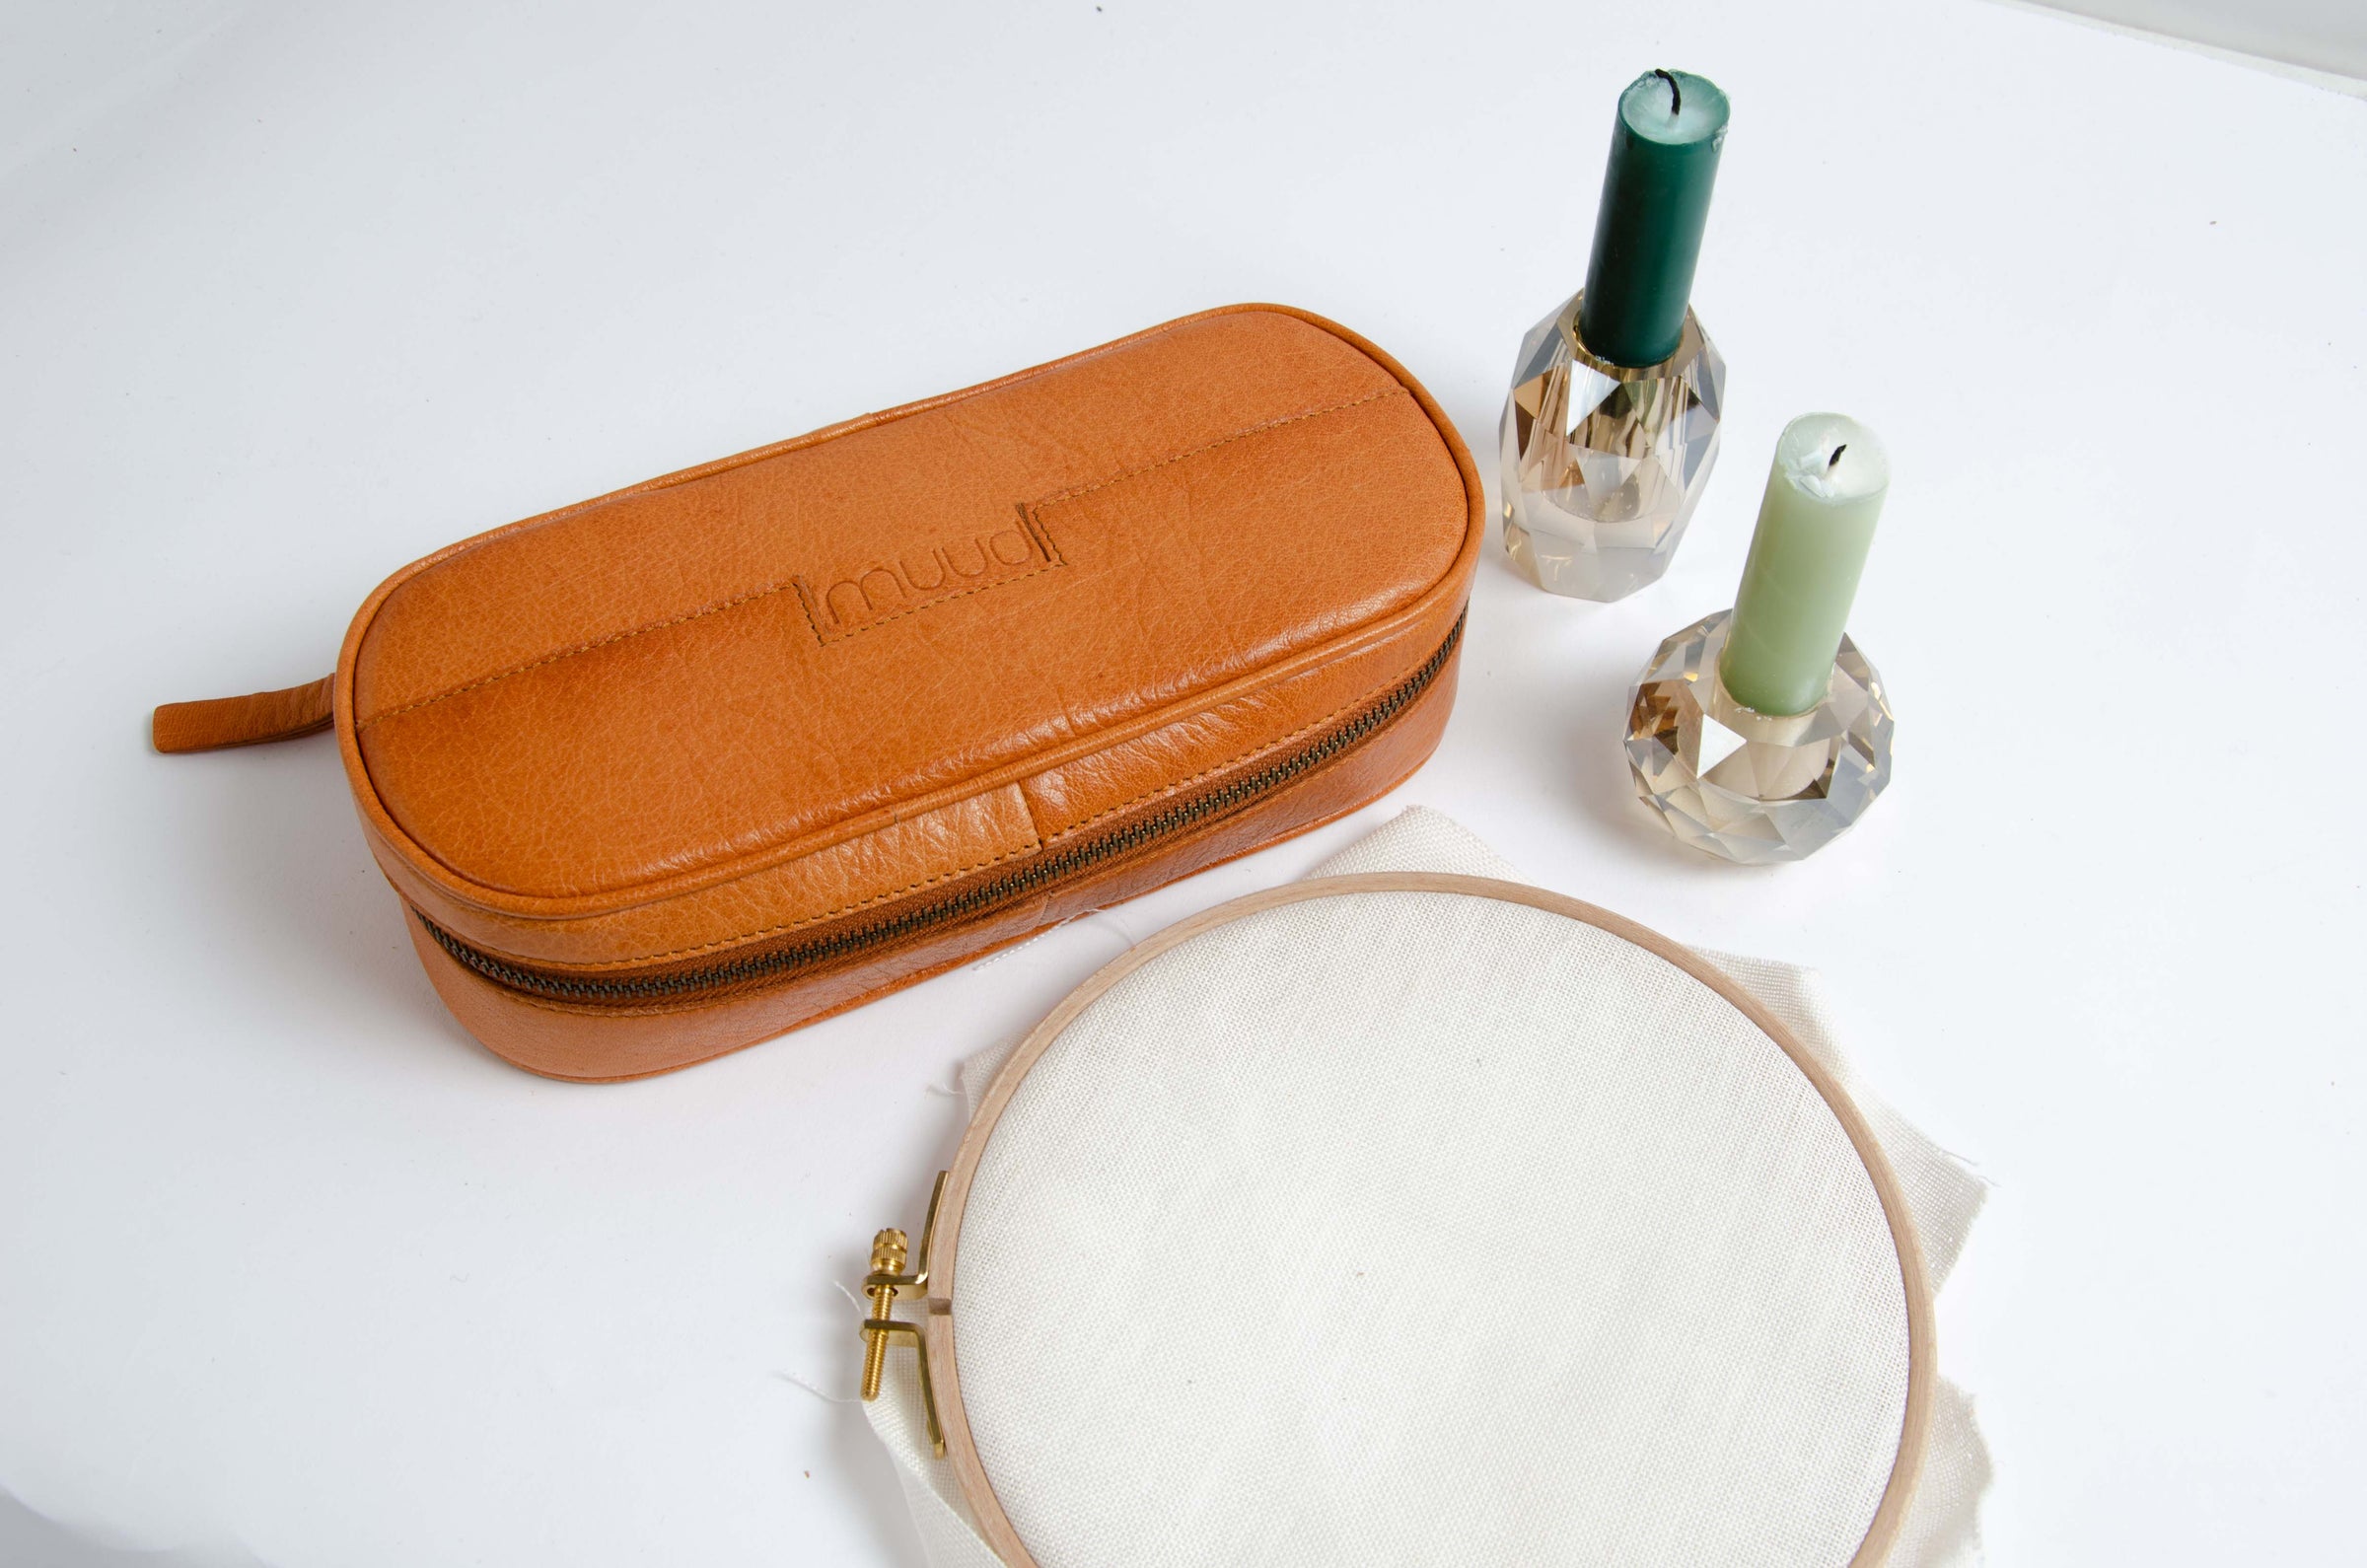 Erinna leather bag for storing embroidery threads and needles. Erinna lædertaske til opbevaring af broderi tråd og nåle.